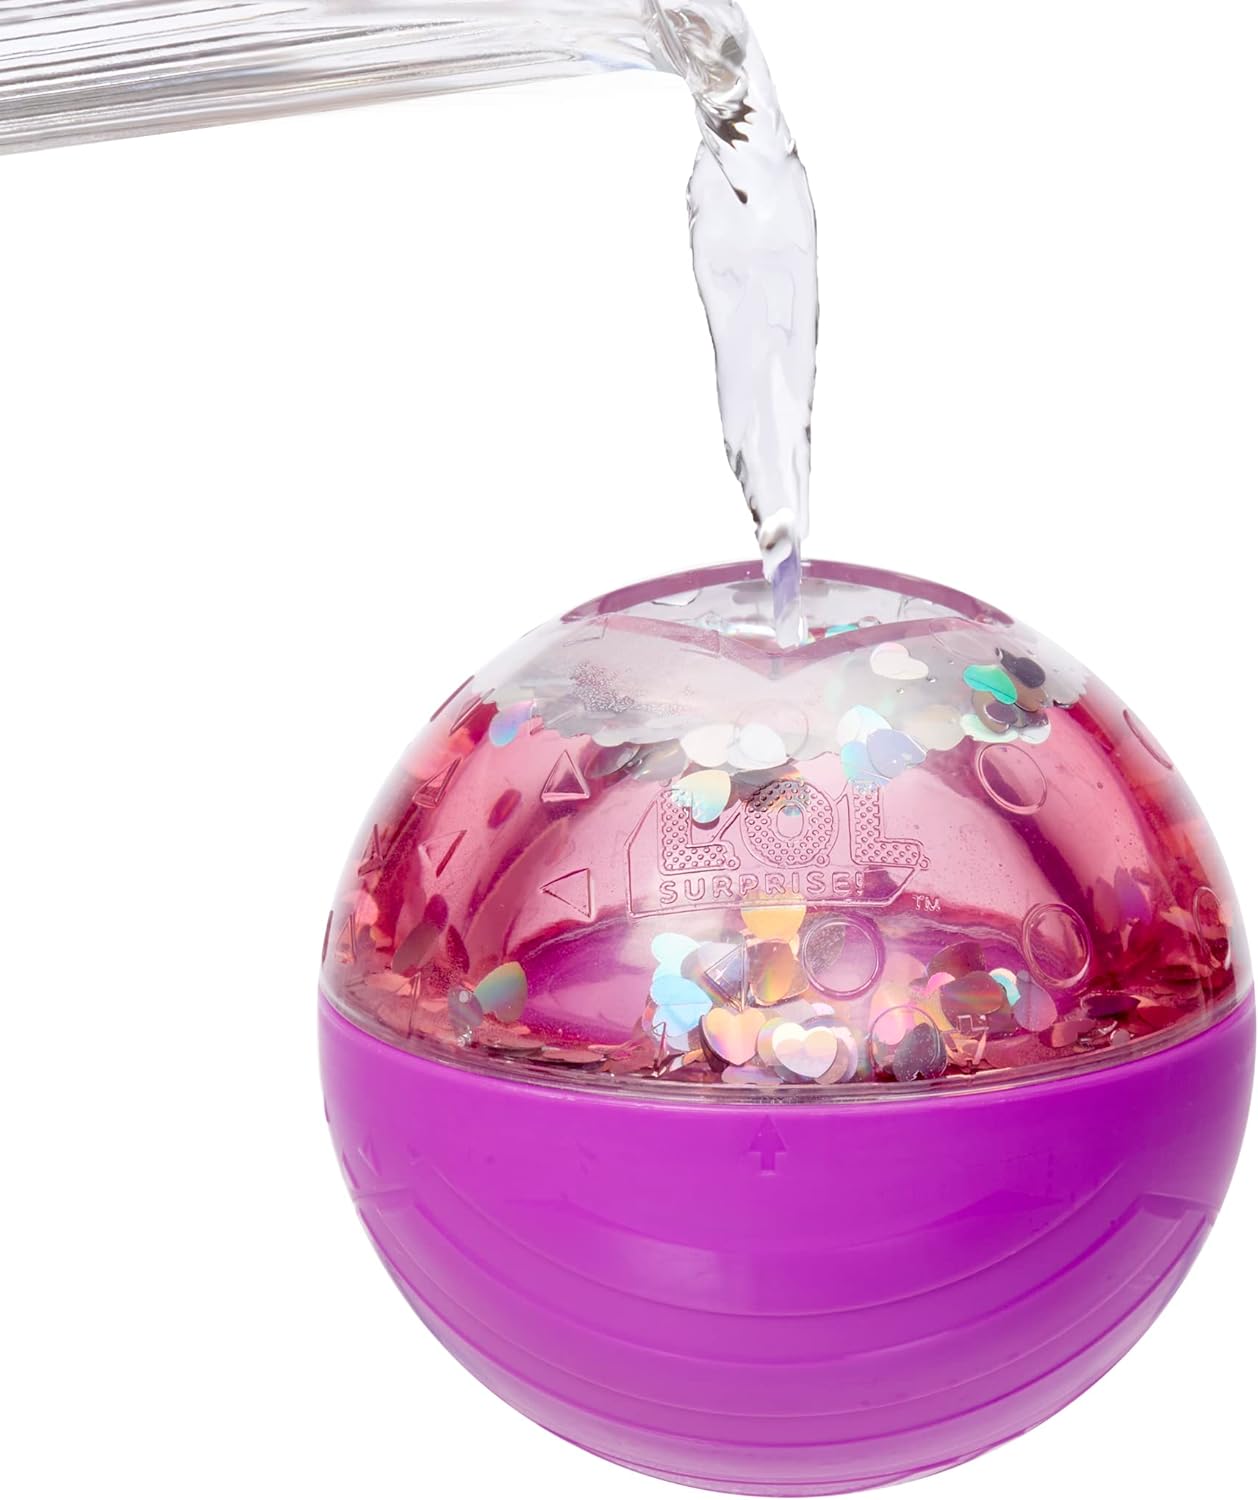 LOL Surprise Bonecas Bubble Surprise - Boneca Colecionável, Surpresas, Acessórios, Unboxing Bubble Surprise, Reação de Espuma Glitter em Água Quente - Ótimo presente para meninas de 4 anos ou mais